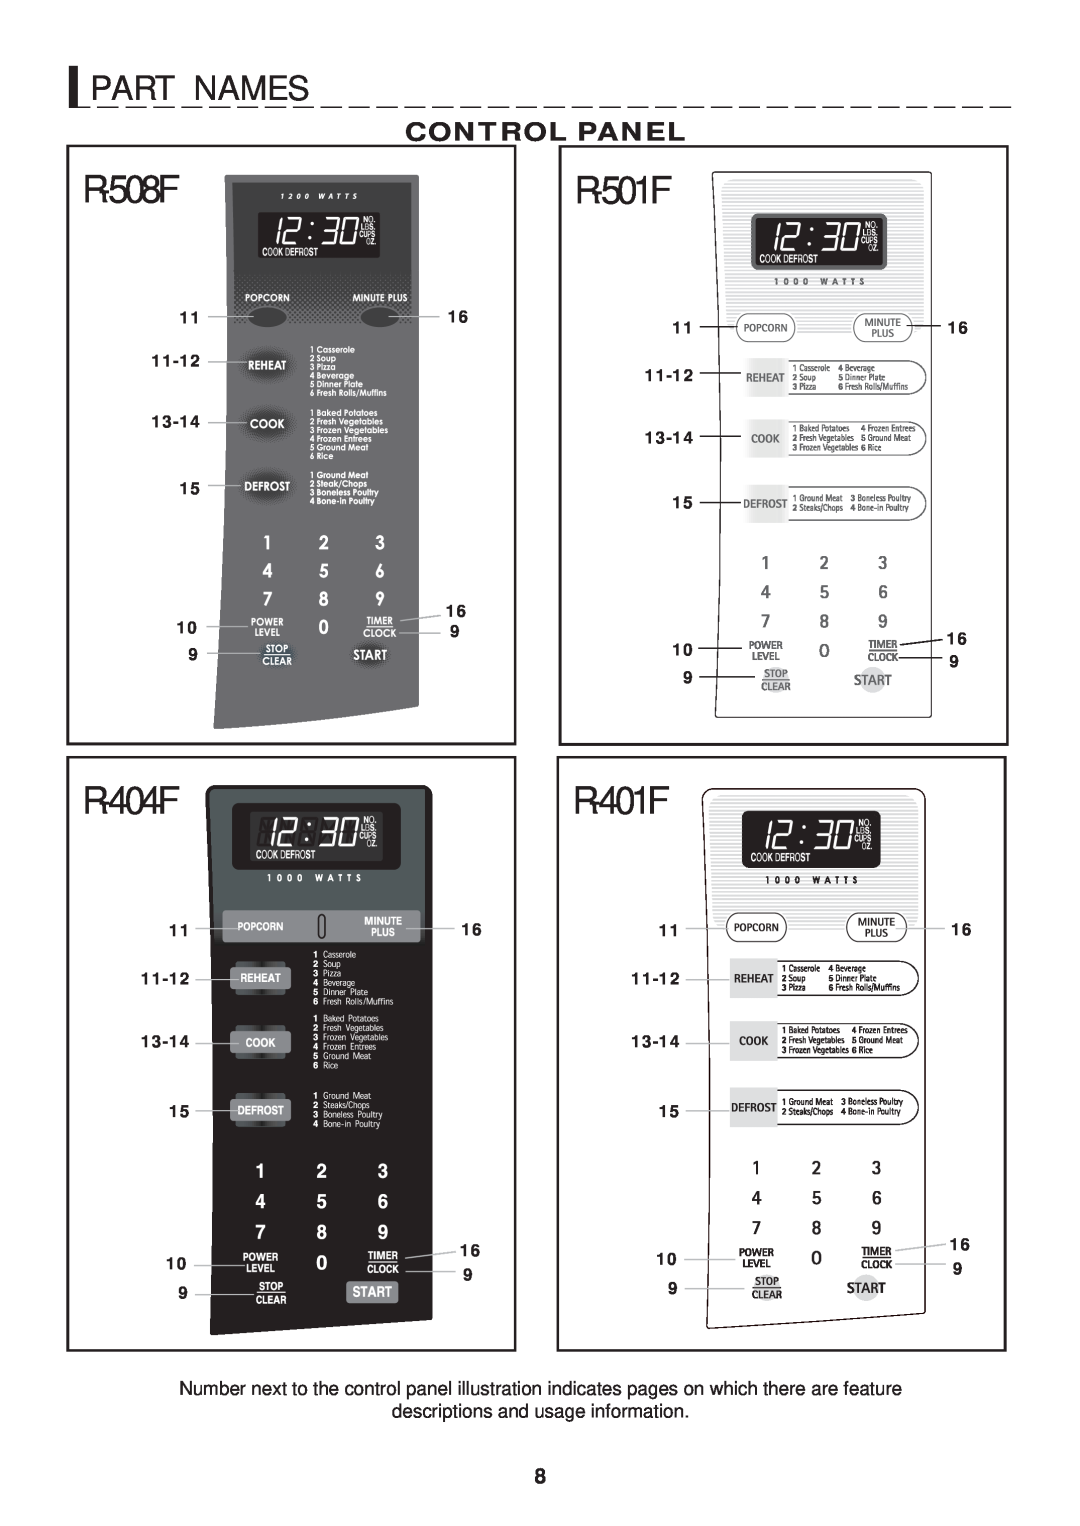 Sharp R-501F, R-401F R - 5 0 1 F, R - 4 0 1 F, P A R T N A M E S, Control Panel, R - 5 0 8 F, 11-12, 13-14, R - 4 0 4 F 